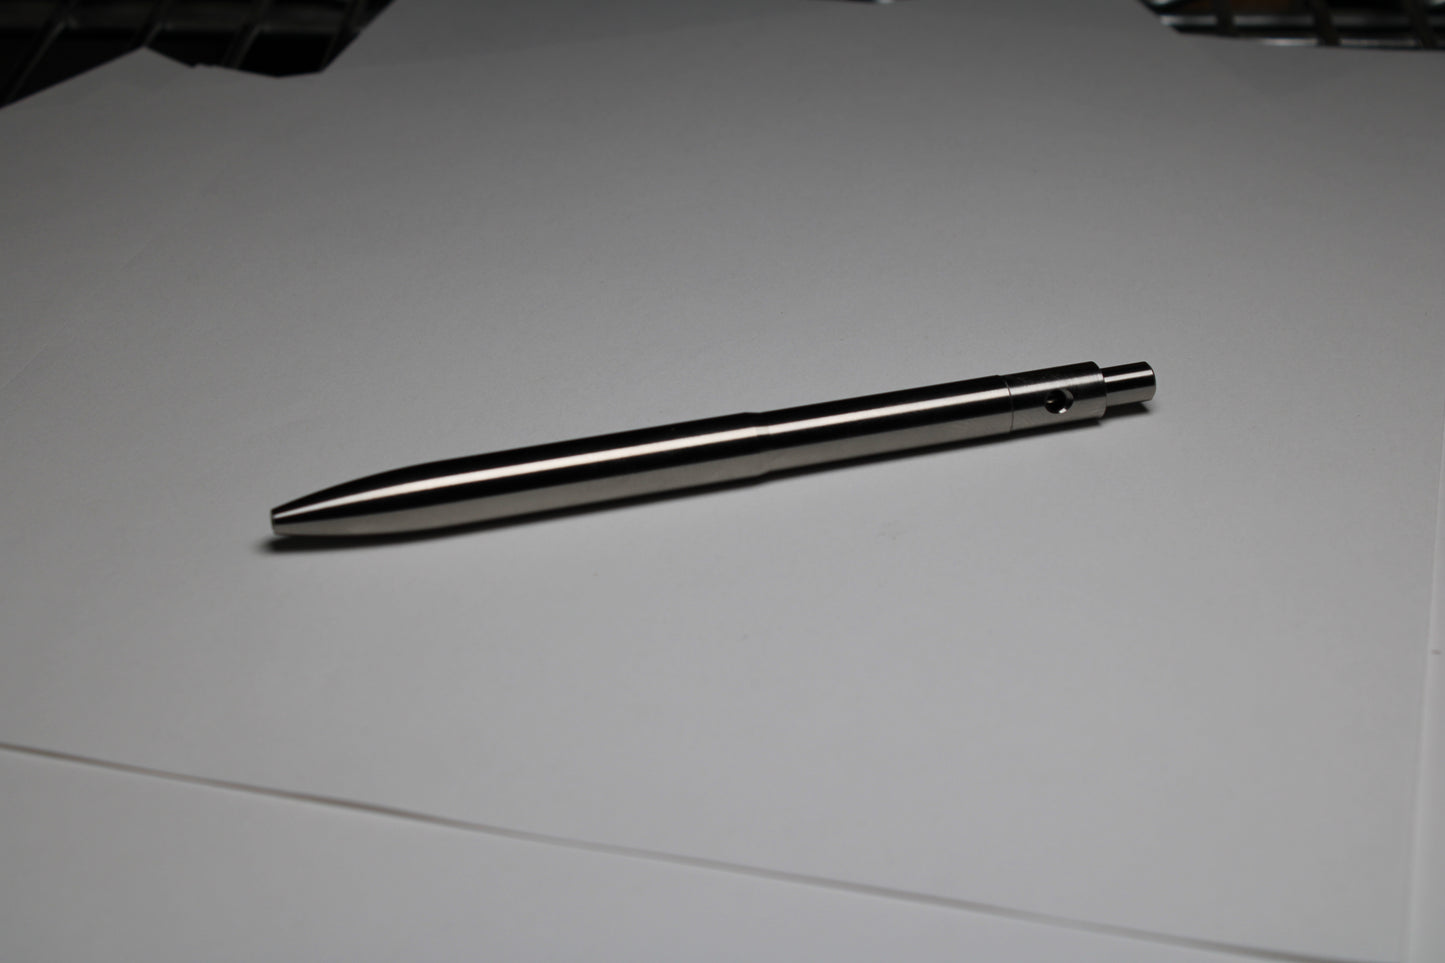 39 Click Pen - 6Al-4V Titanium - Pentel EnerGel 0.7mm